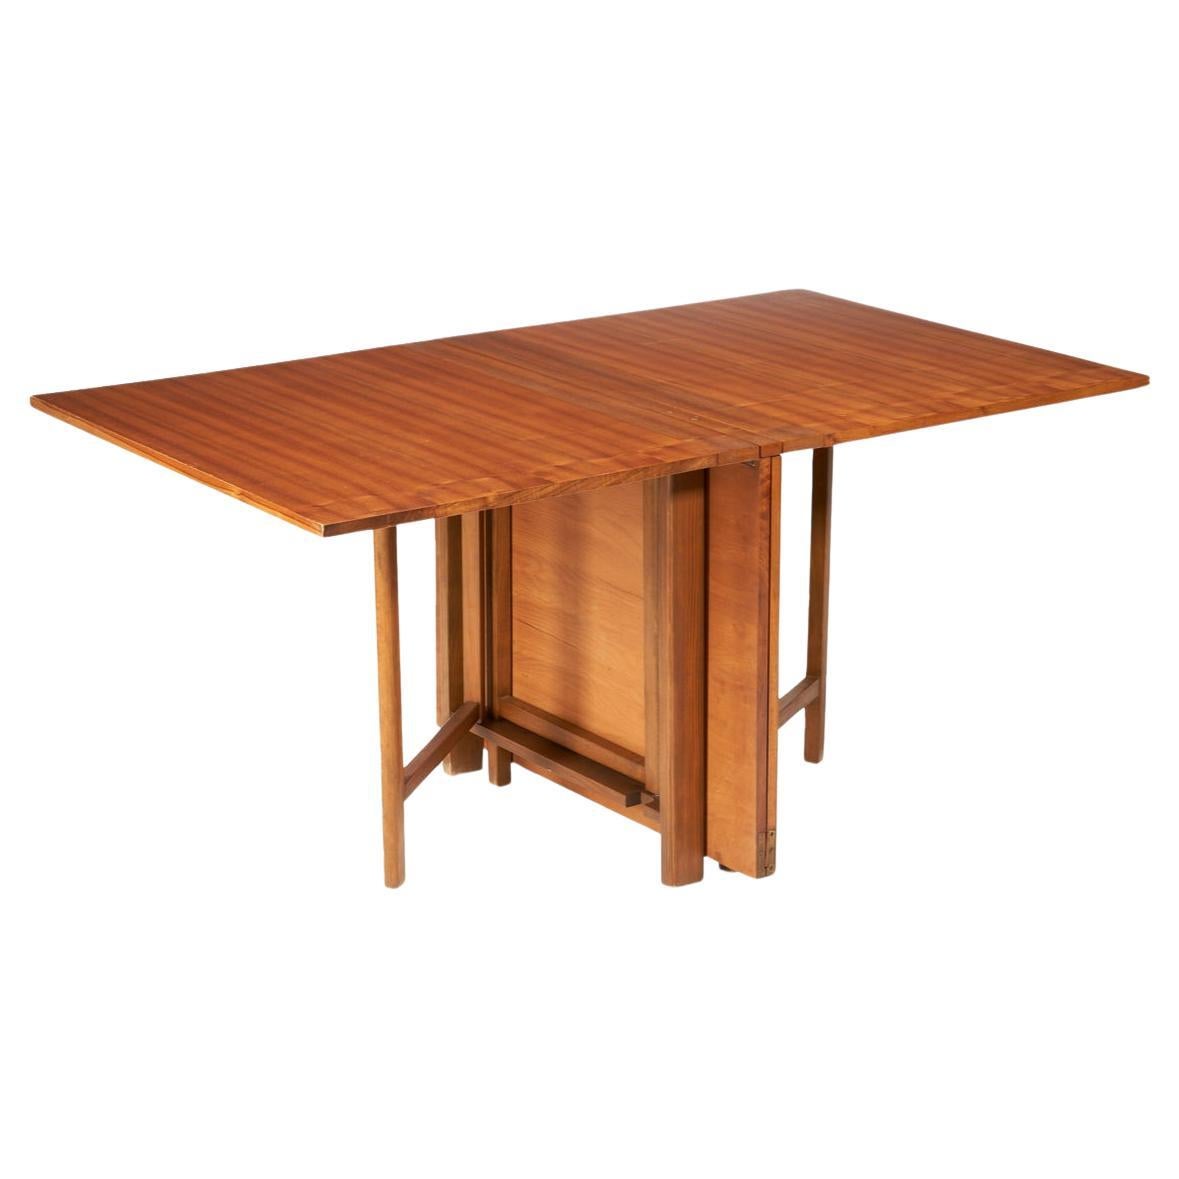 Table de salle à manger à rallonge pliante Foldes Modernes du milieu du siècle, conçue par Bruno Mathsson. La table est en bois de teck brun avec des ferrures en laiton. Bon état vintage. La table se replie très facilement pour se ranger lorsqu'elle